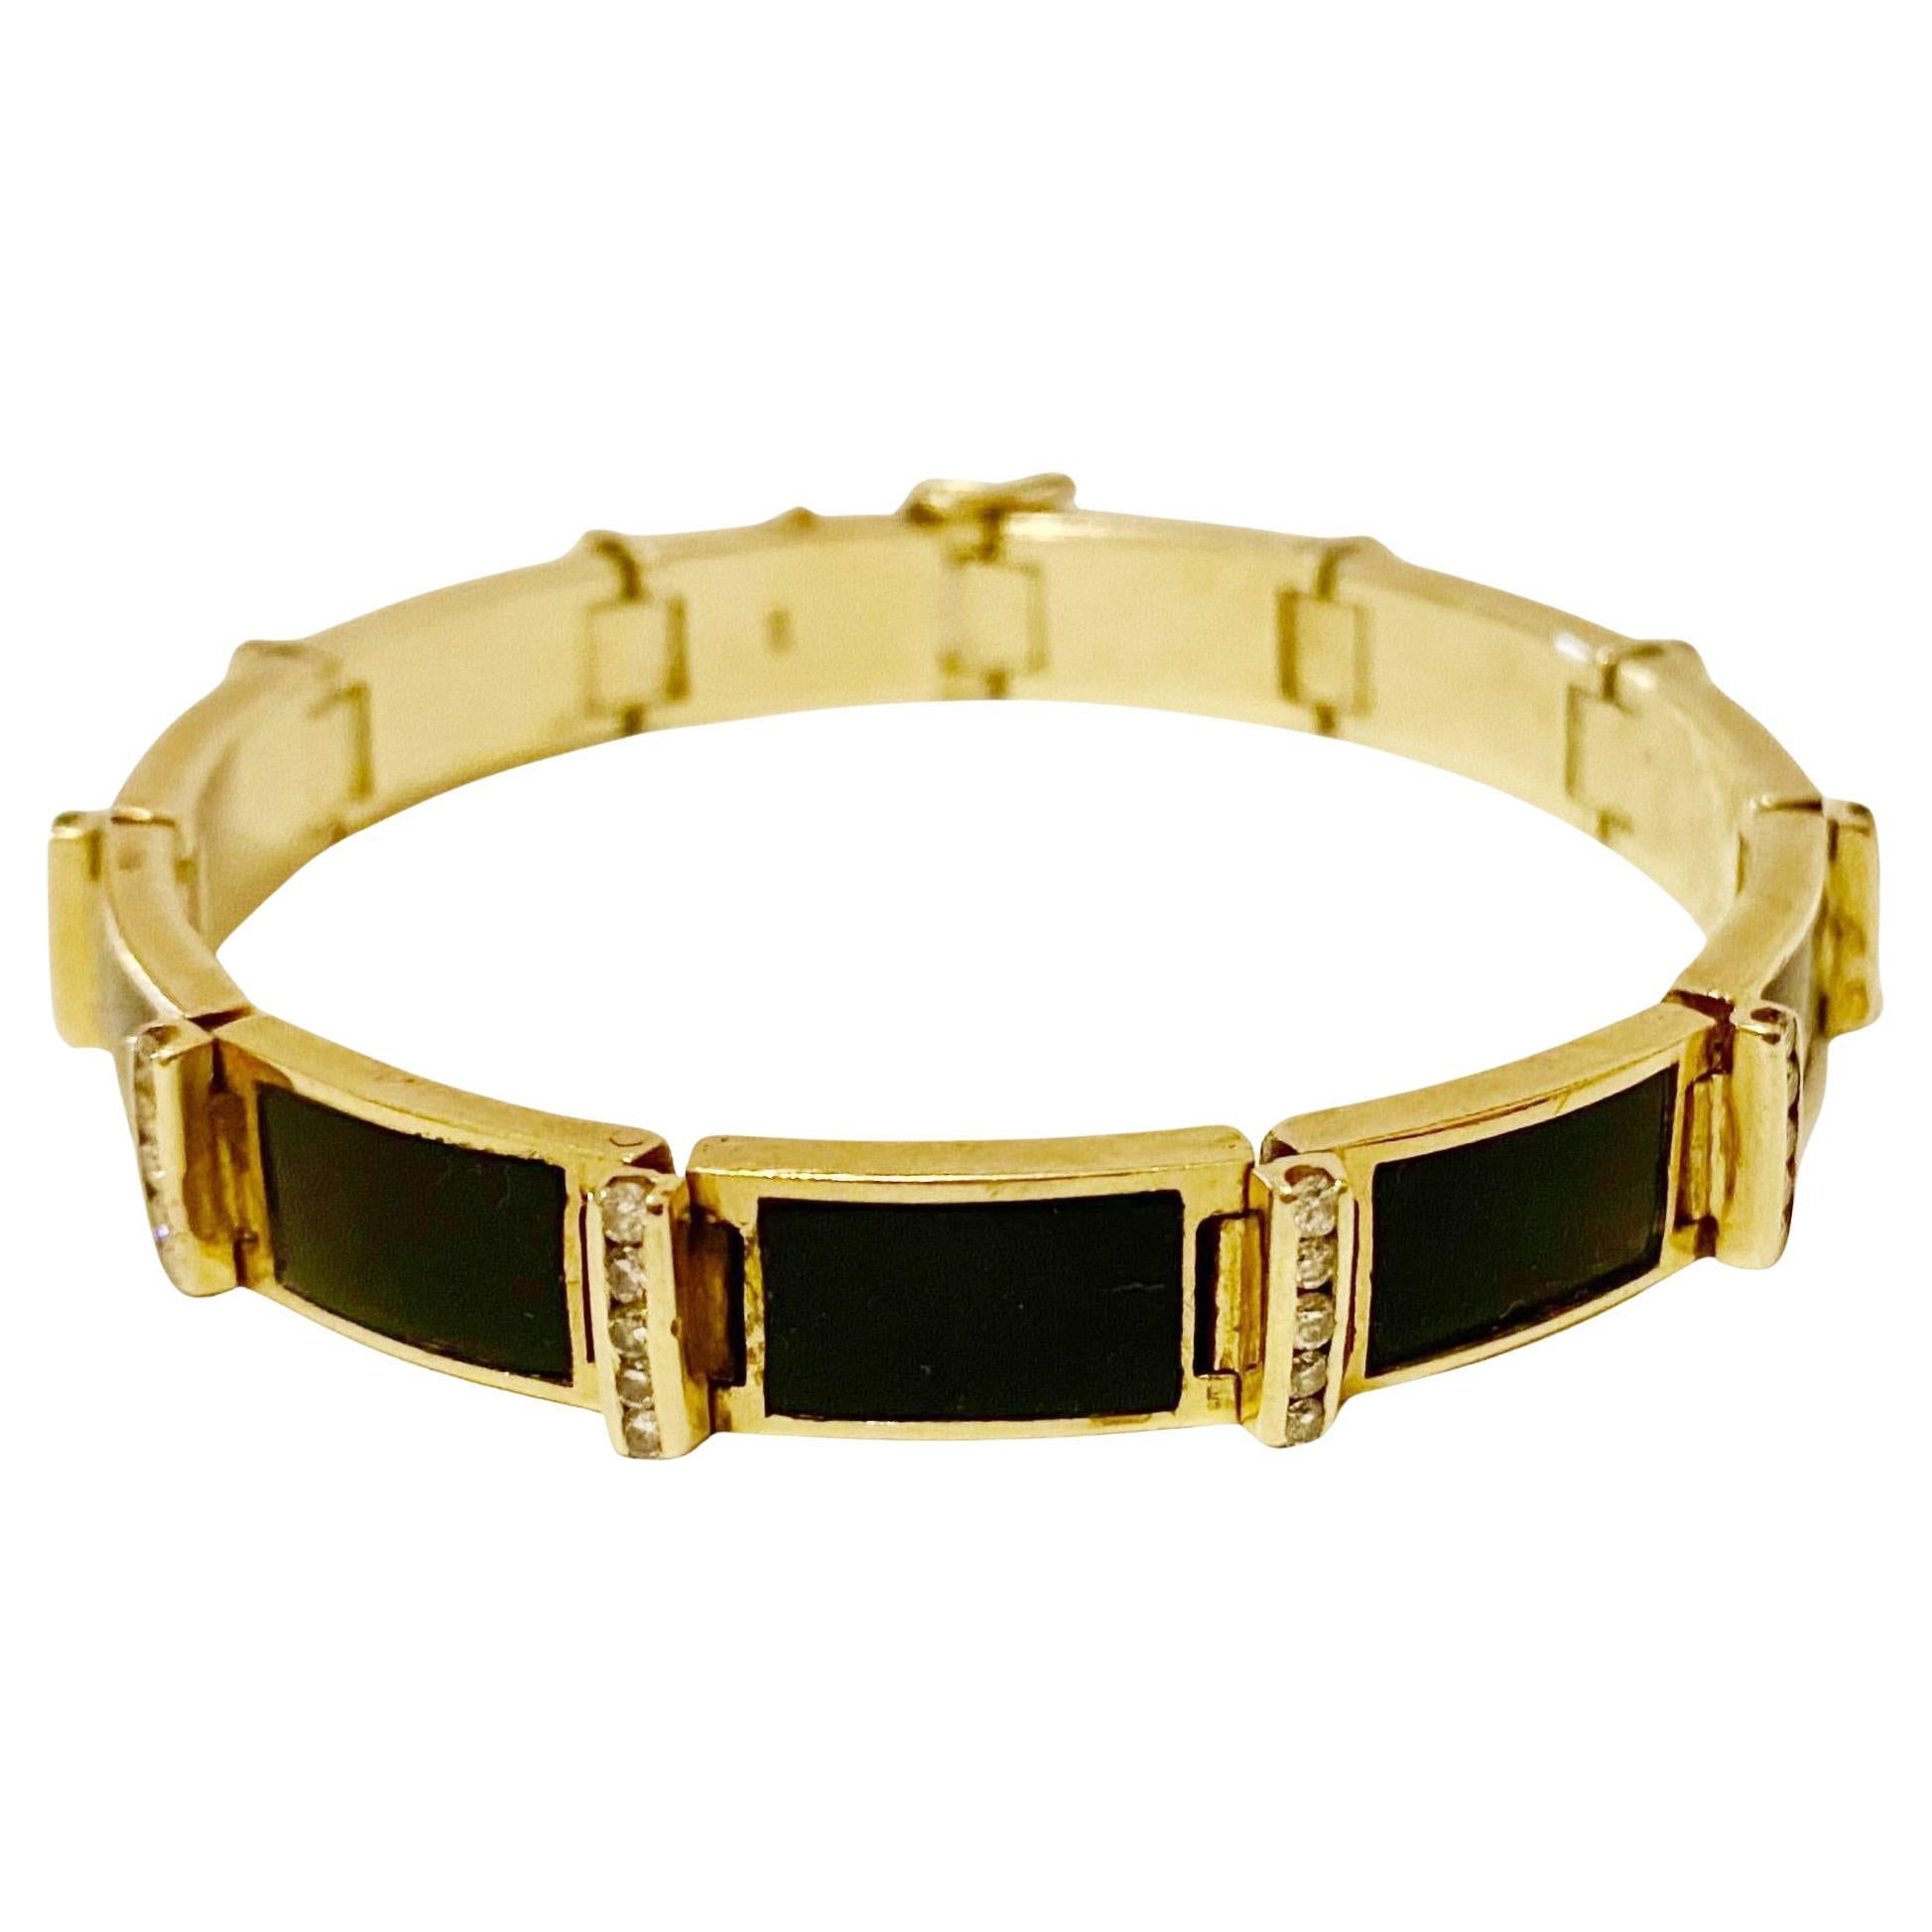 Vintage 14k Gold Onyx Diamond Bracelet 